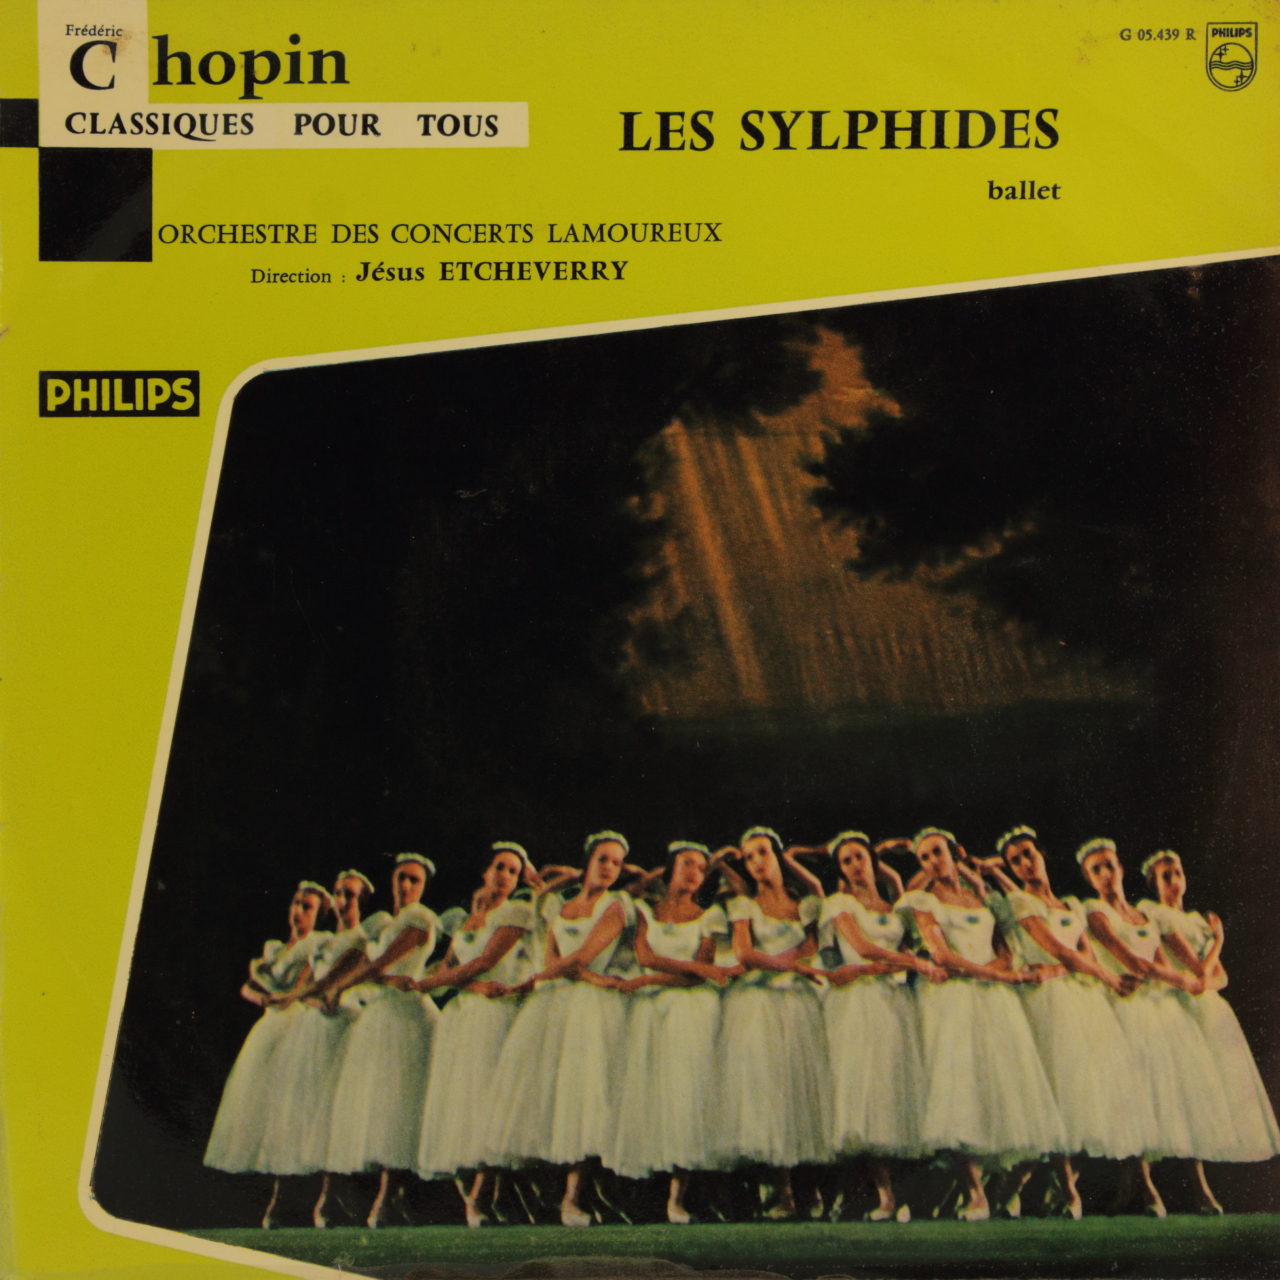 Chopin: Les Sylphides